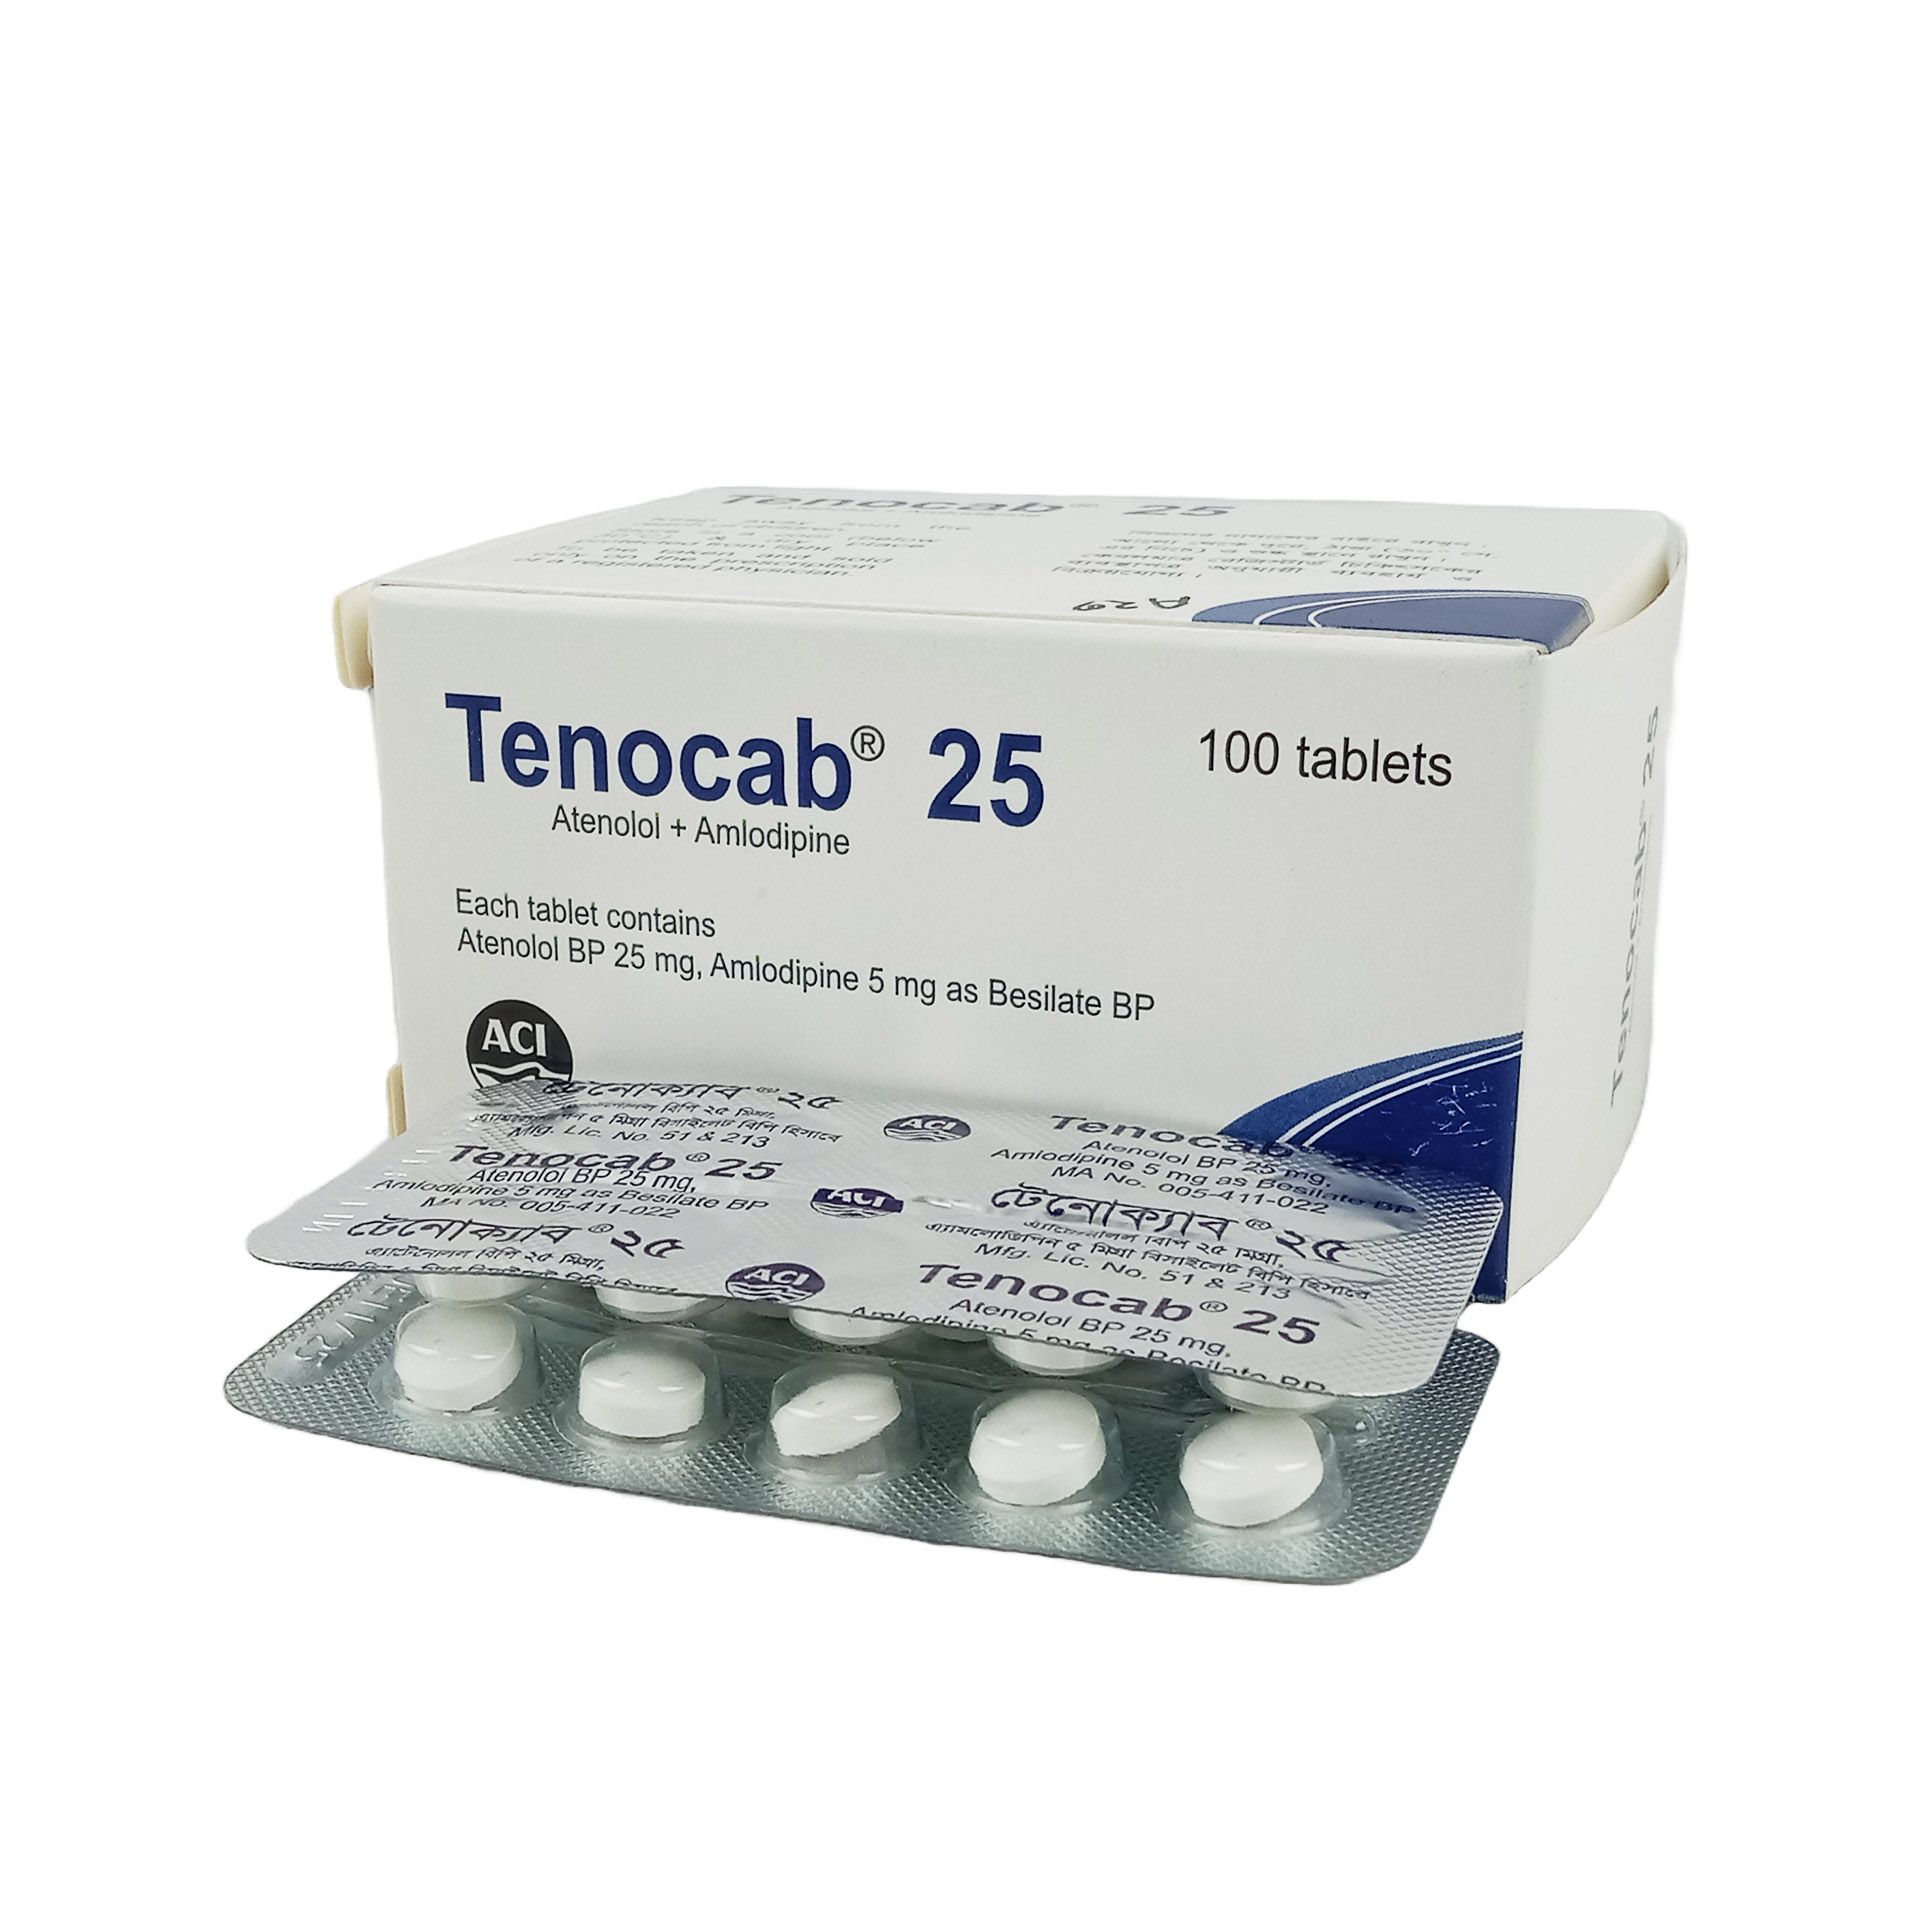 Tenocab 25mg+25mg Tablet